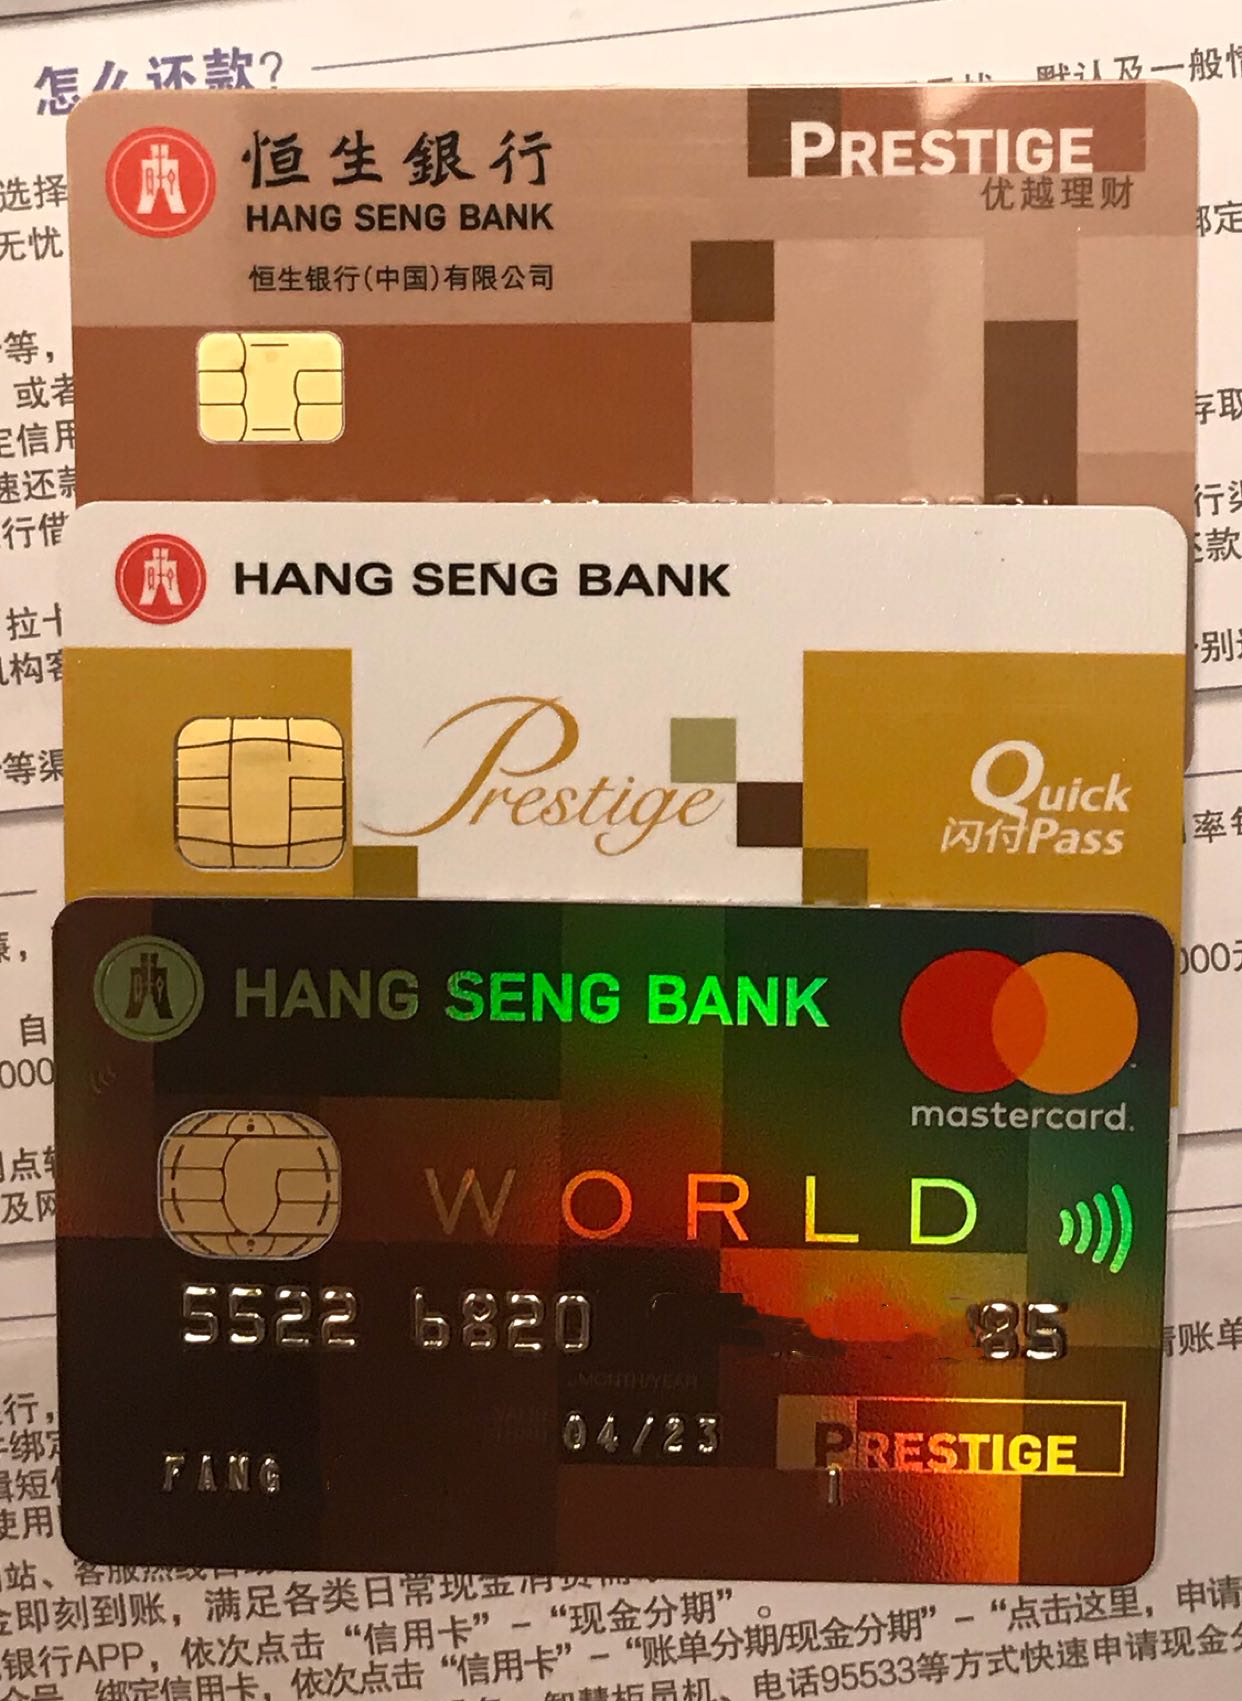 可以买比特币的平台_香港信用卡可以买比特币吗_那里可以买比特币提现